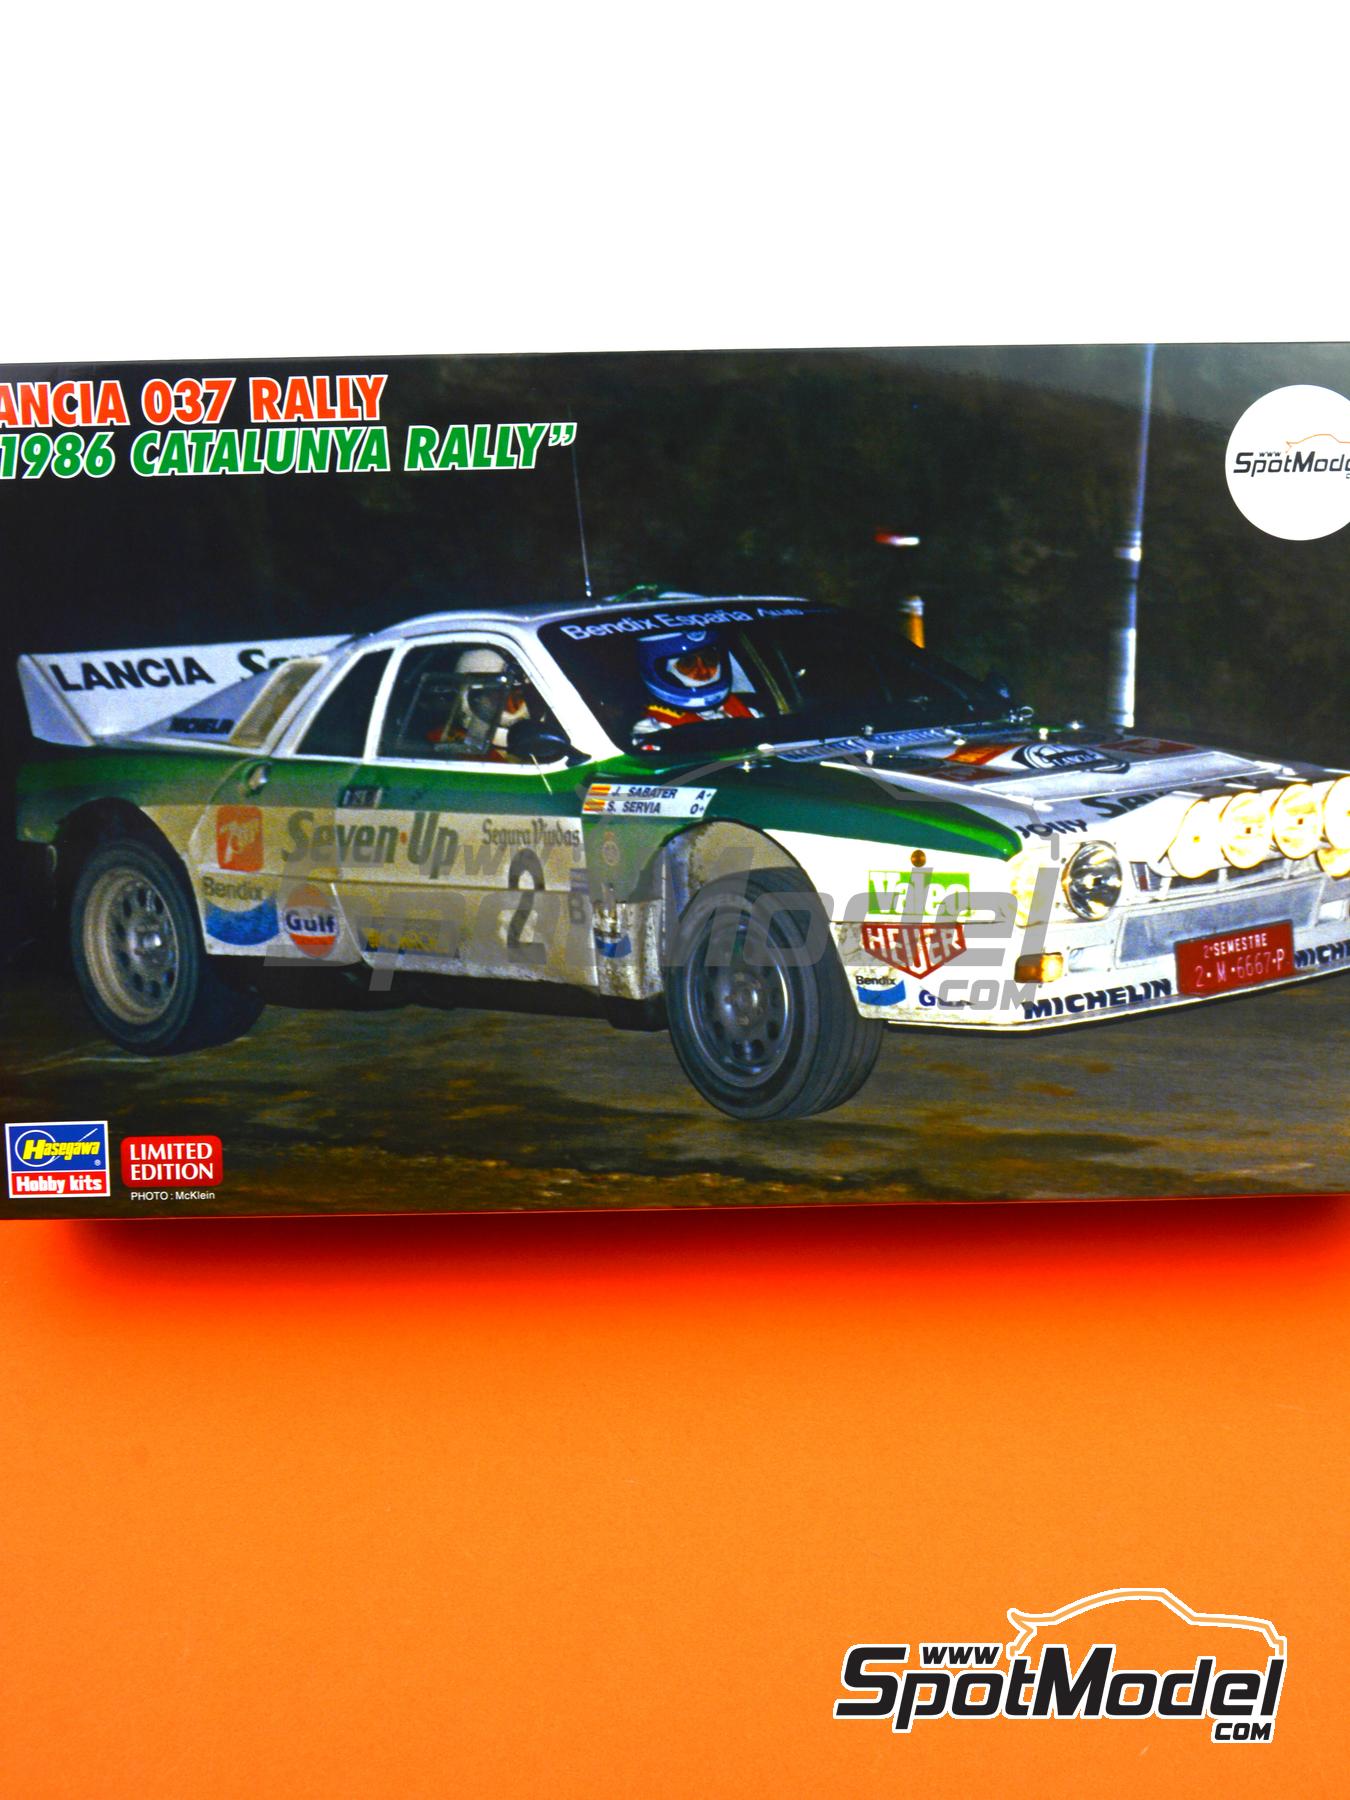 Hasegawa 20399 Lancia 037 Rally 'Jolly Club' 1/24 scale kit 